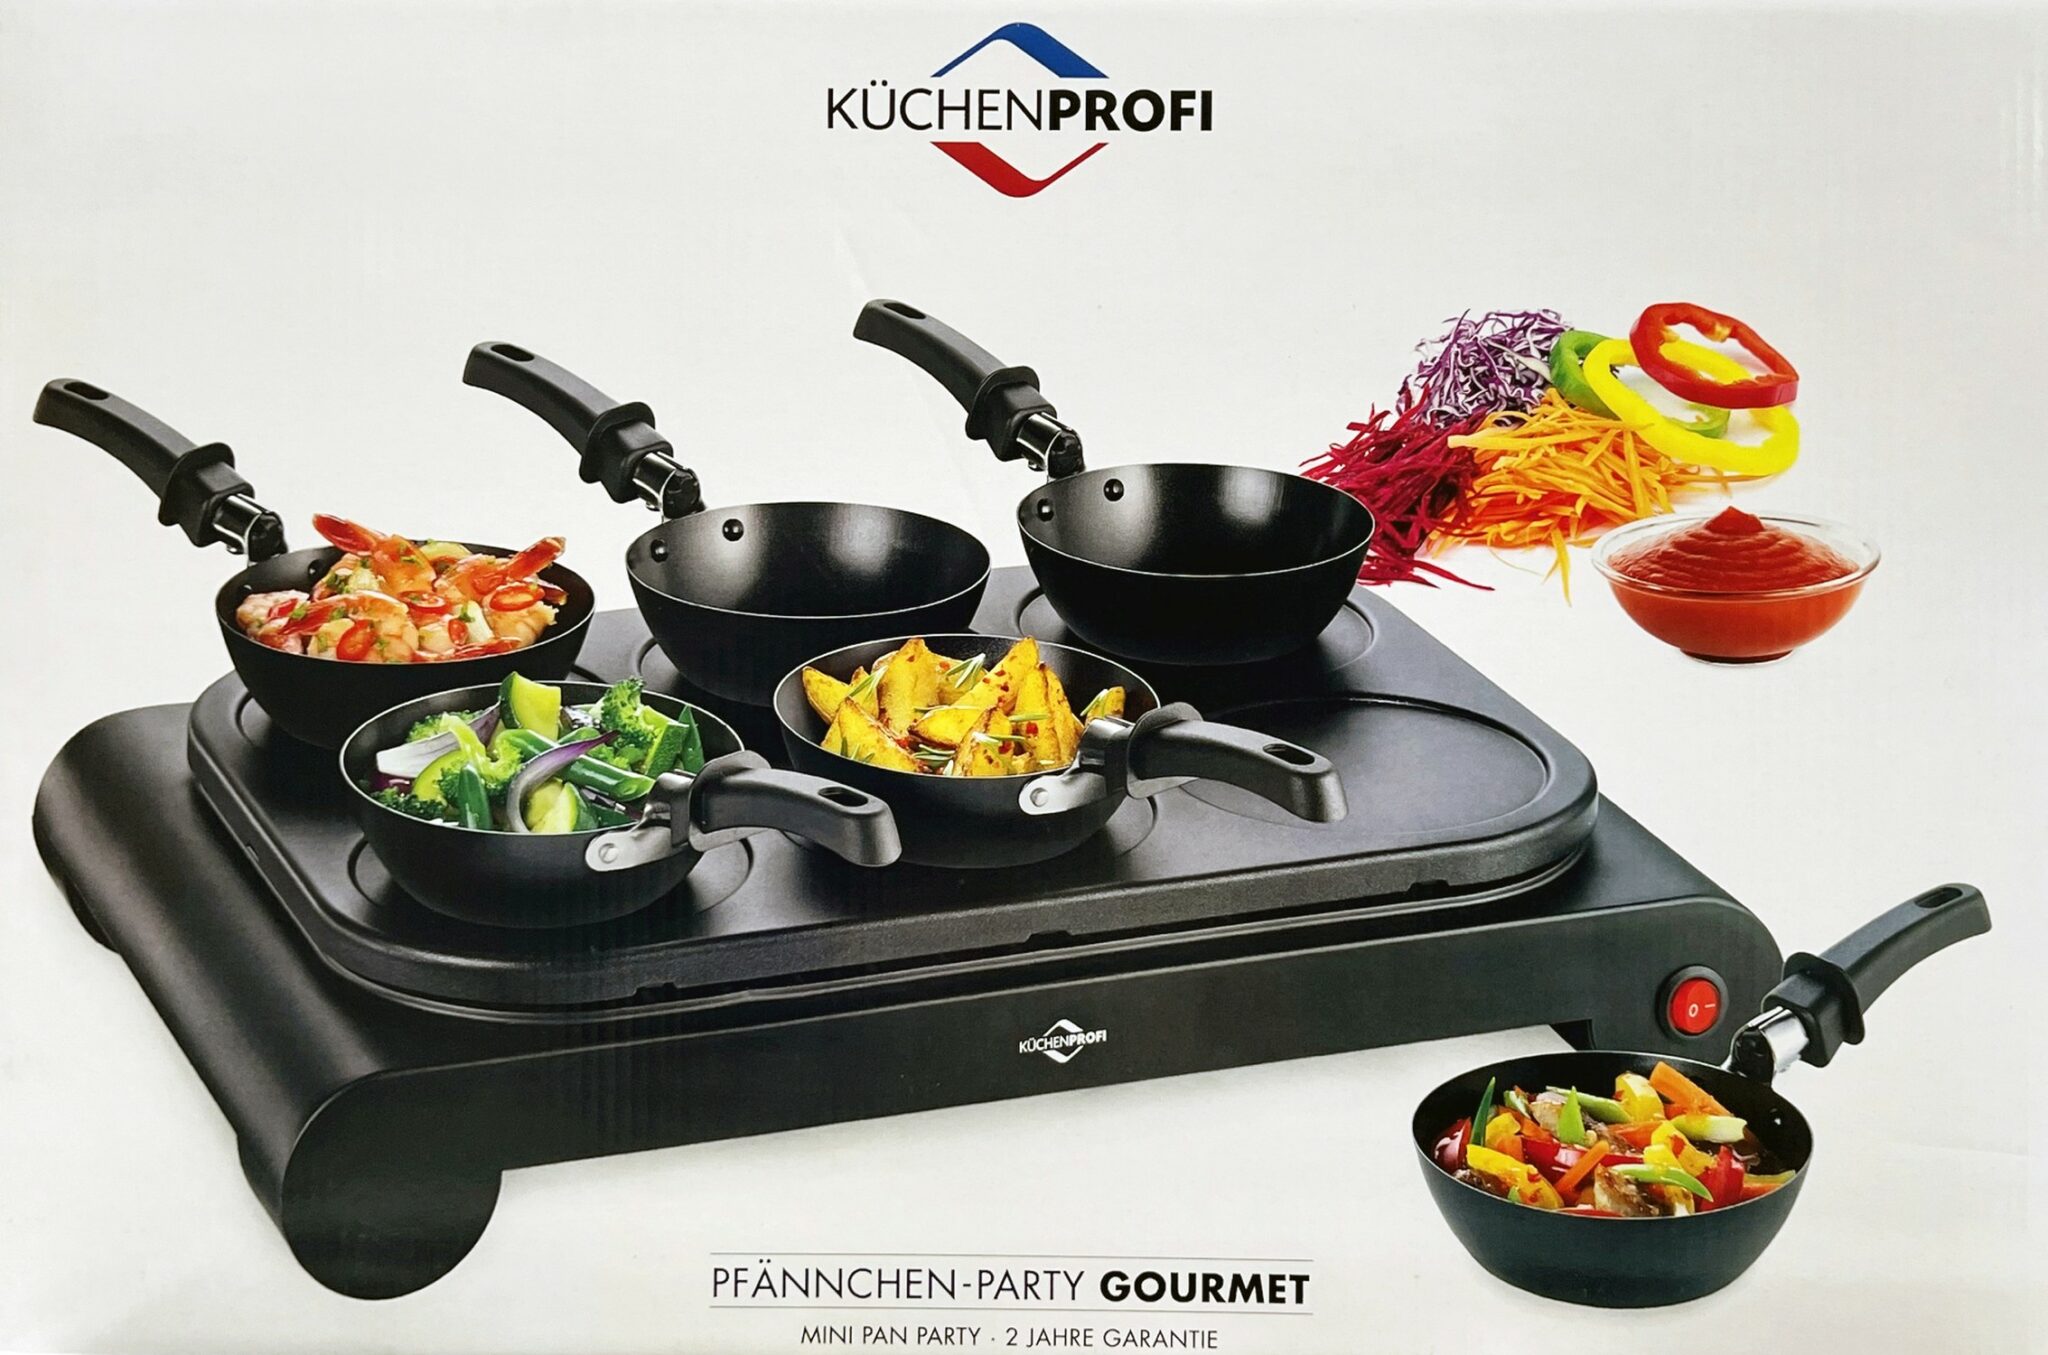 Küchenprofi Raclette Pfännchen-Party GOURMET NEU 4007371069977